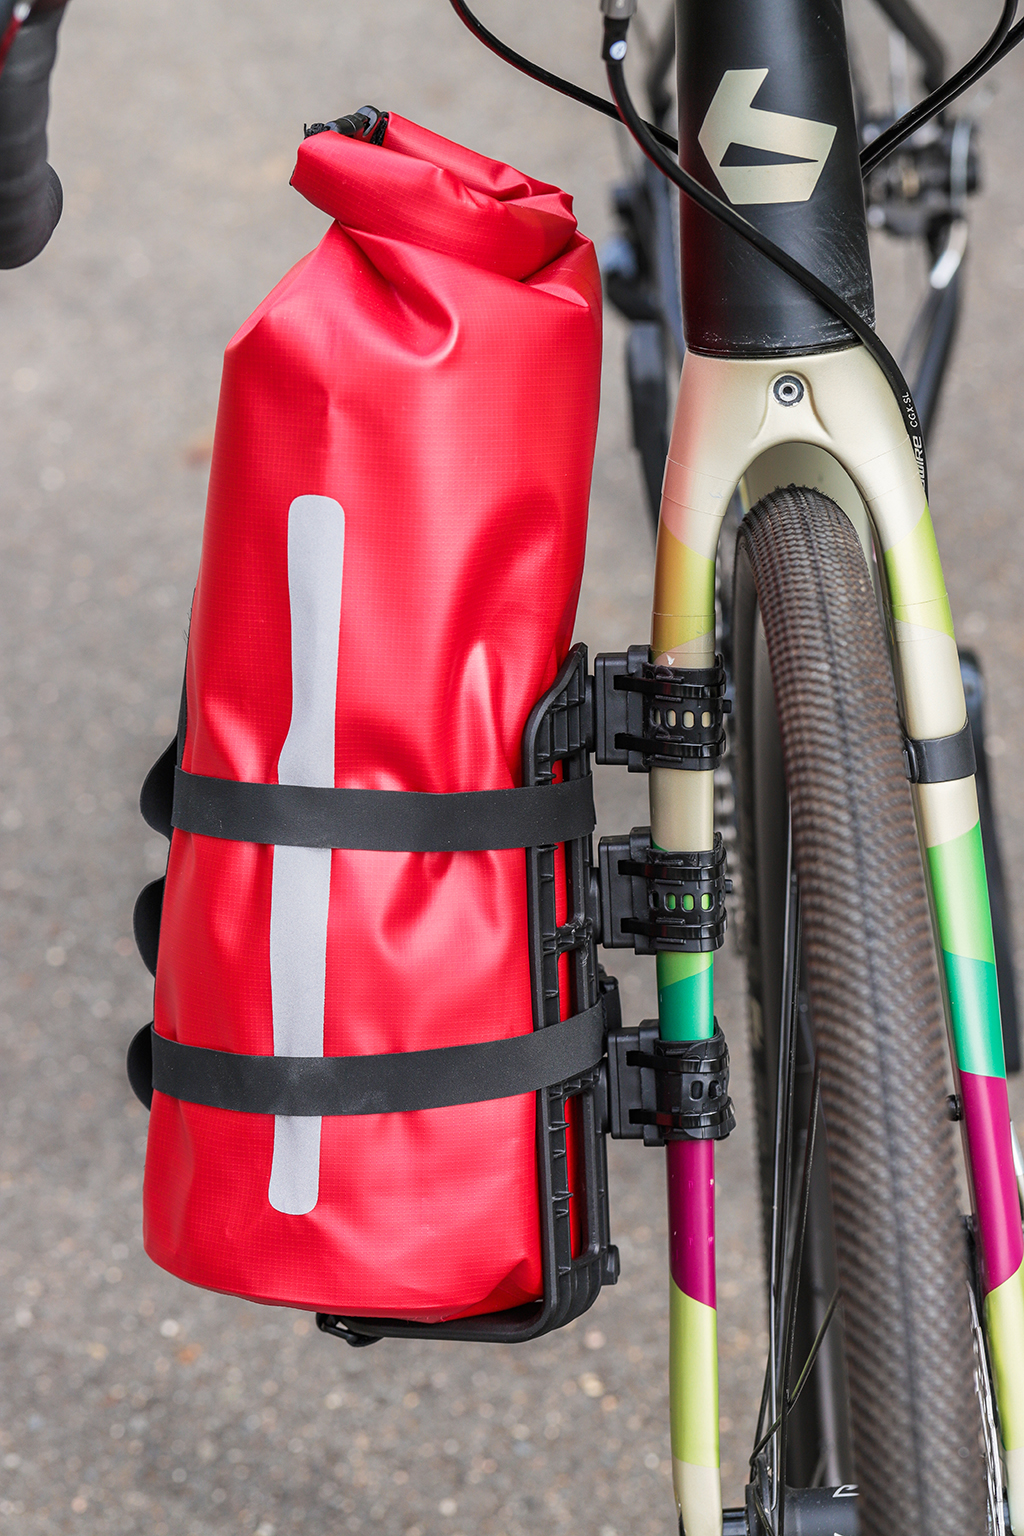 Bidon - L'accessoire d'hydratation indispensable à vélo